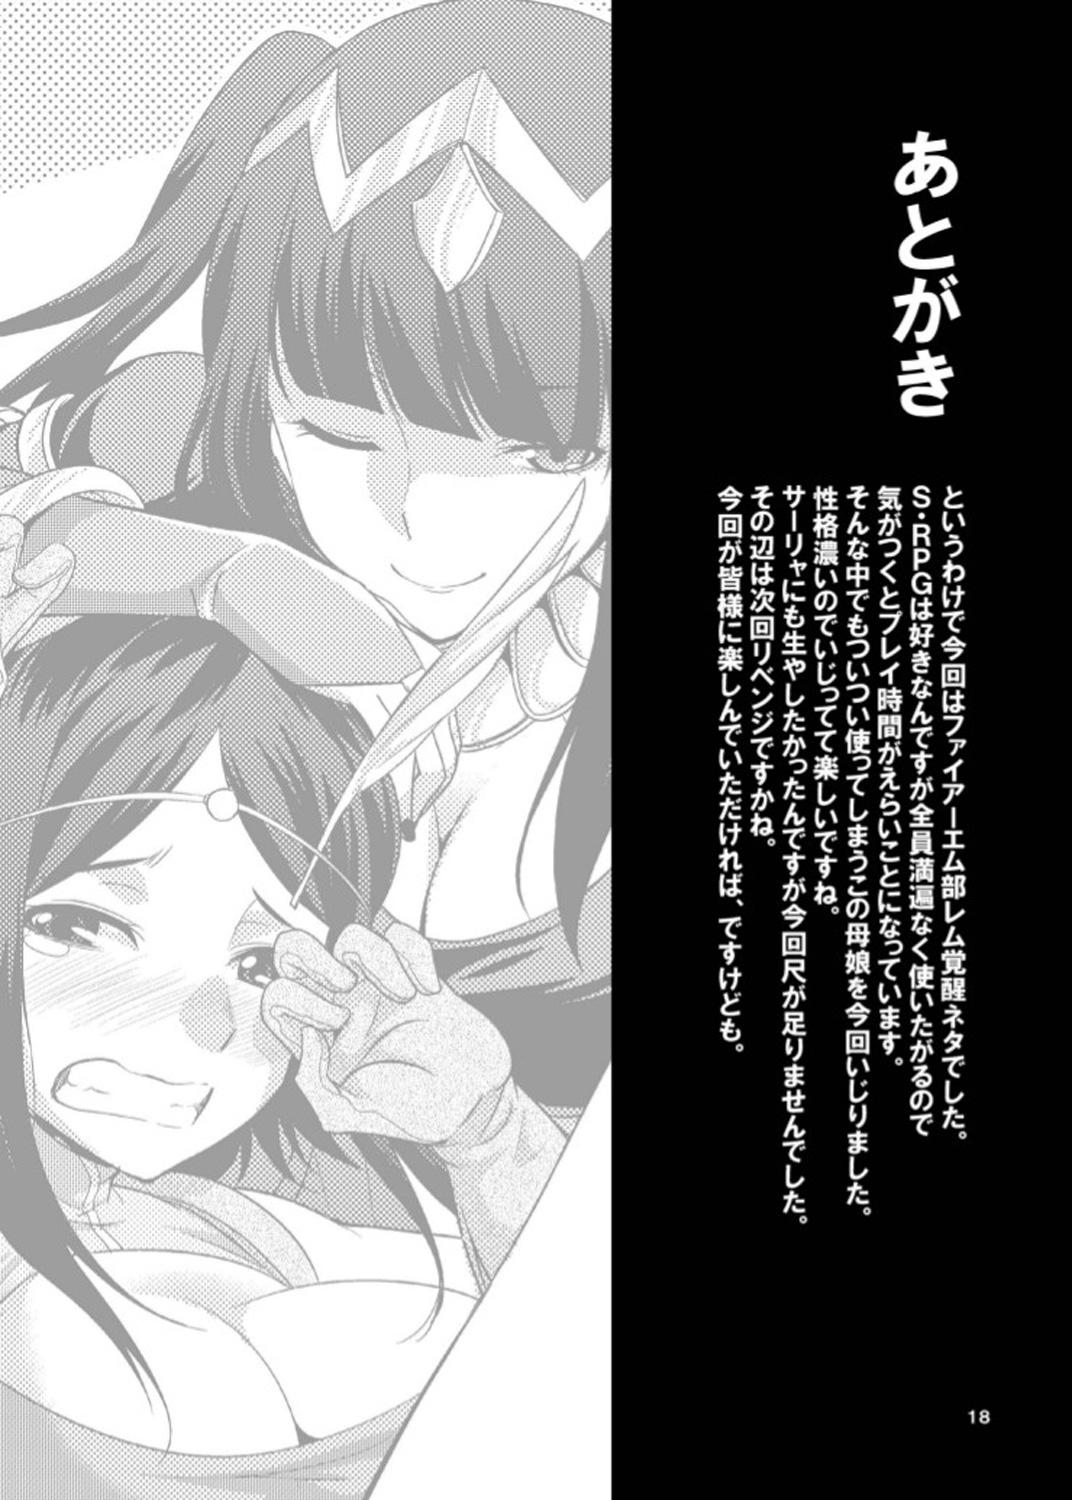 Gay Outinpublic Komaka Sugizu Tsutawaru de Arou Ero Doujin Senshuken - Fire emblem awakening Long - Page 18